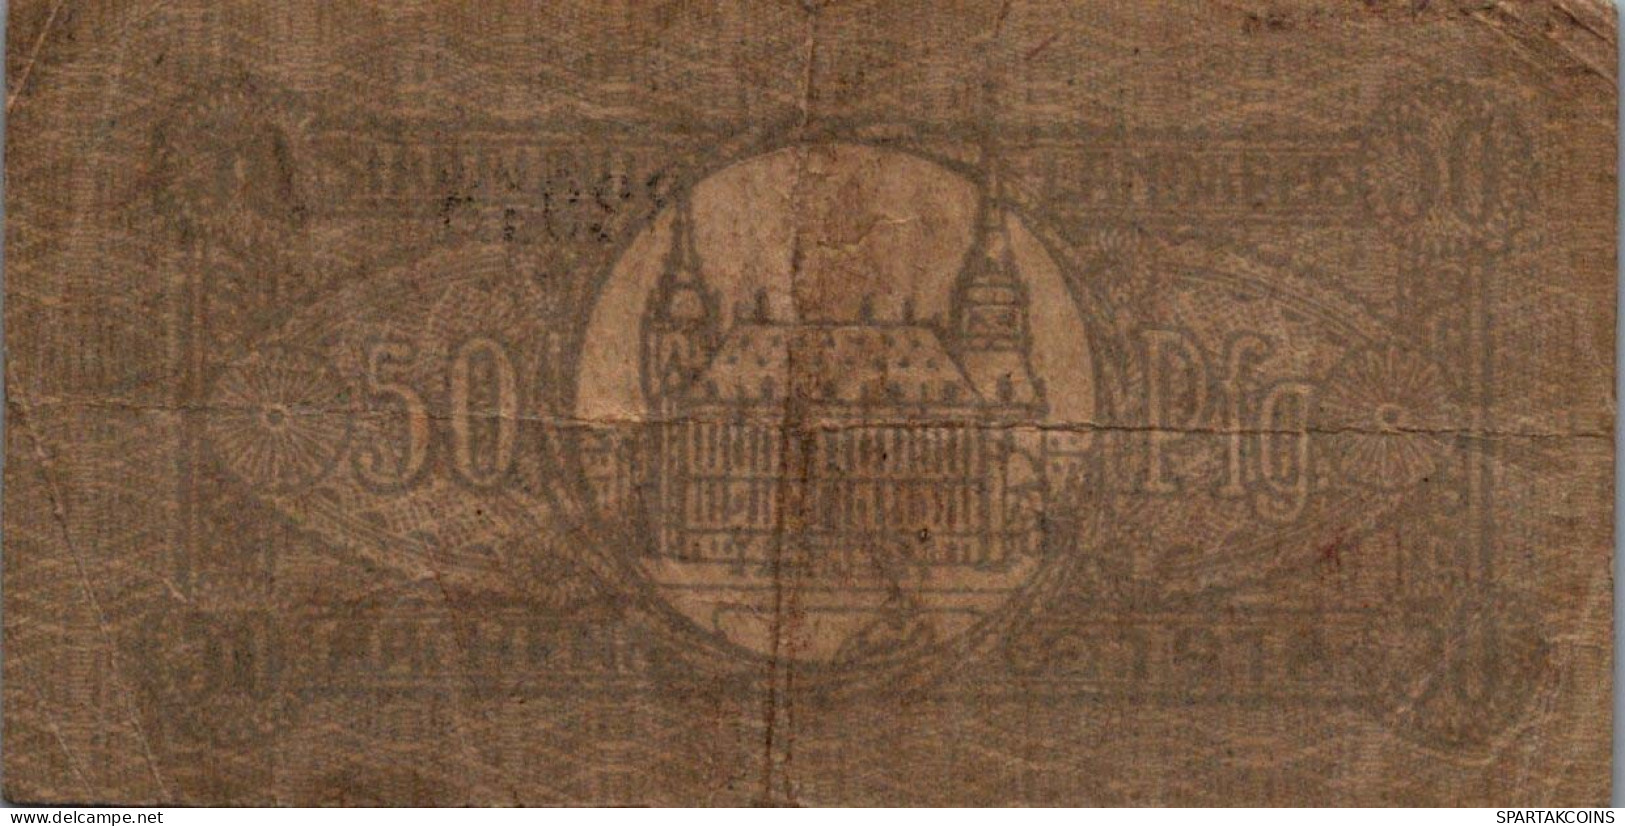 50 PFENNIG 1918 Stadt AACHEN Rhine DEUTSCHLAND Notgeld Banknote #PI432 - [11] Emissions Locales